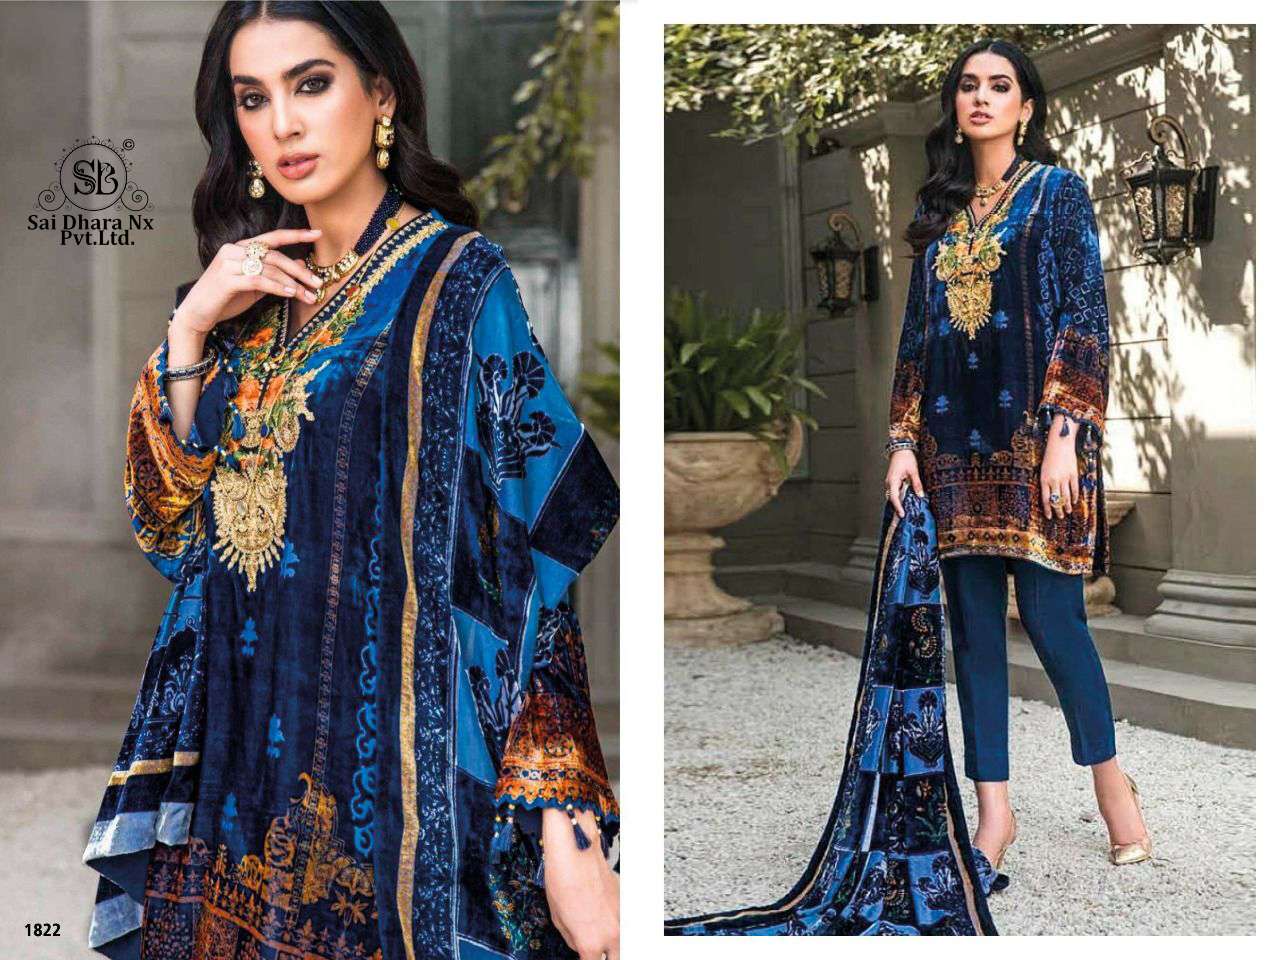 deepsy suit presents digital printed 3 piece pakistani suit wholesale shop in surat - SaiDharaNx